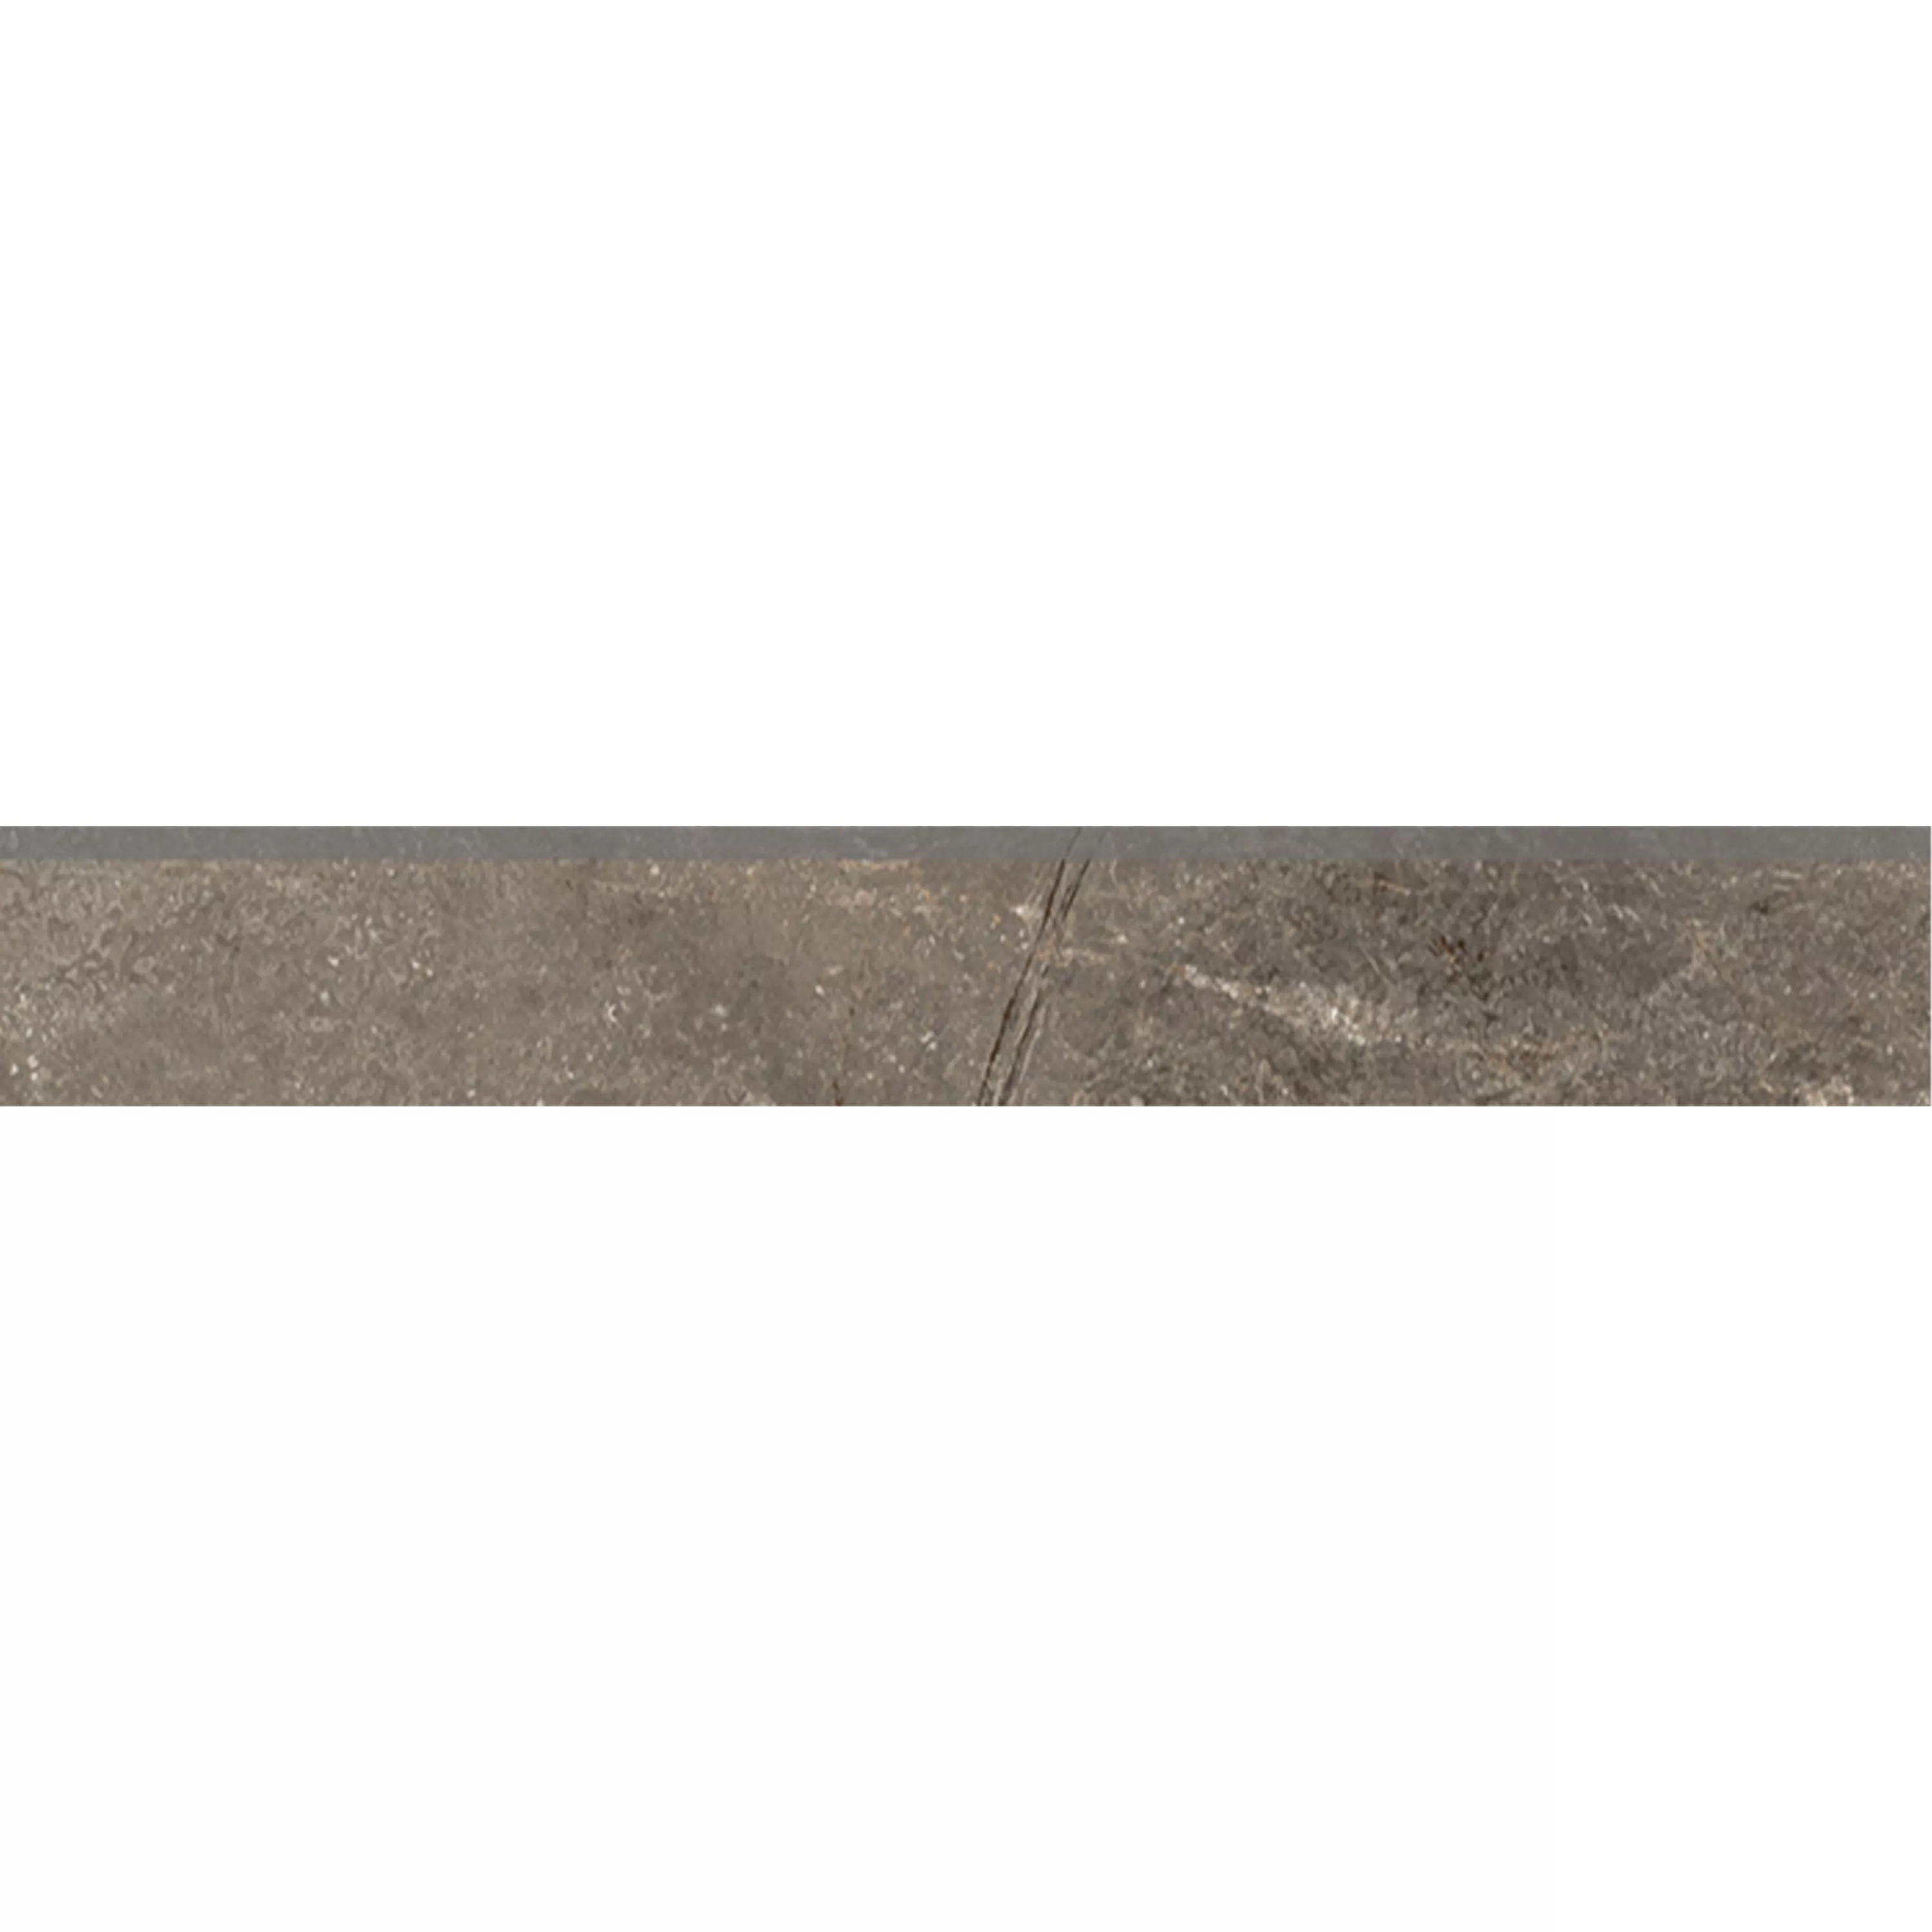 Πλακάκια Δαπέδου Pangea Μαρμάρινη Όψη Παγωμένος Mokka Bάση 7x120cm